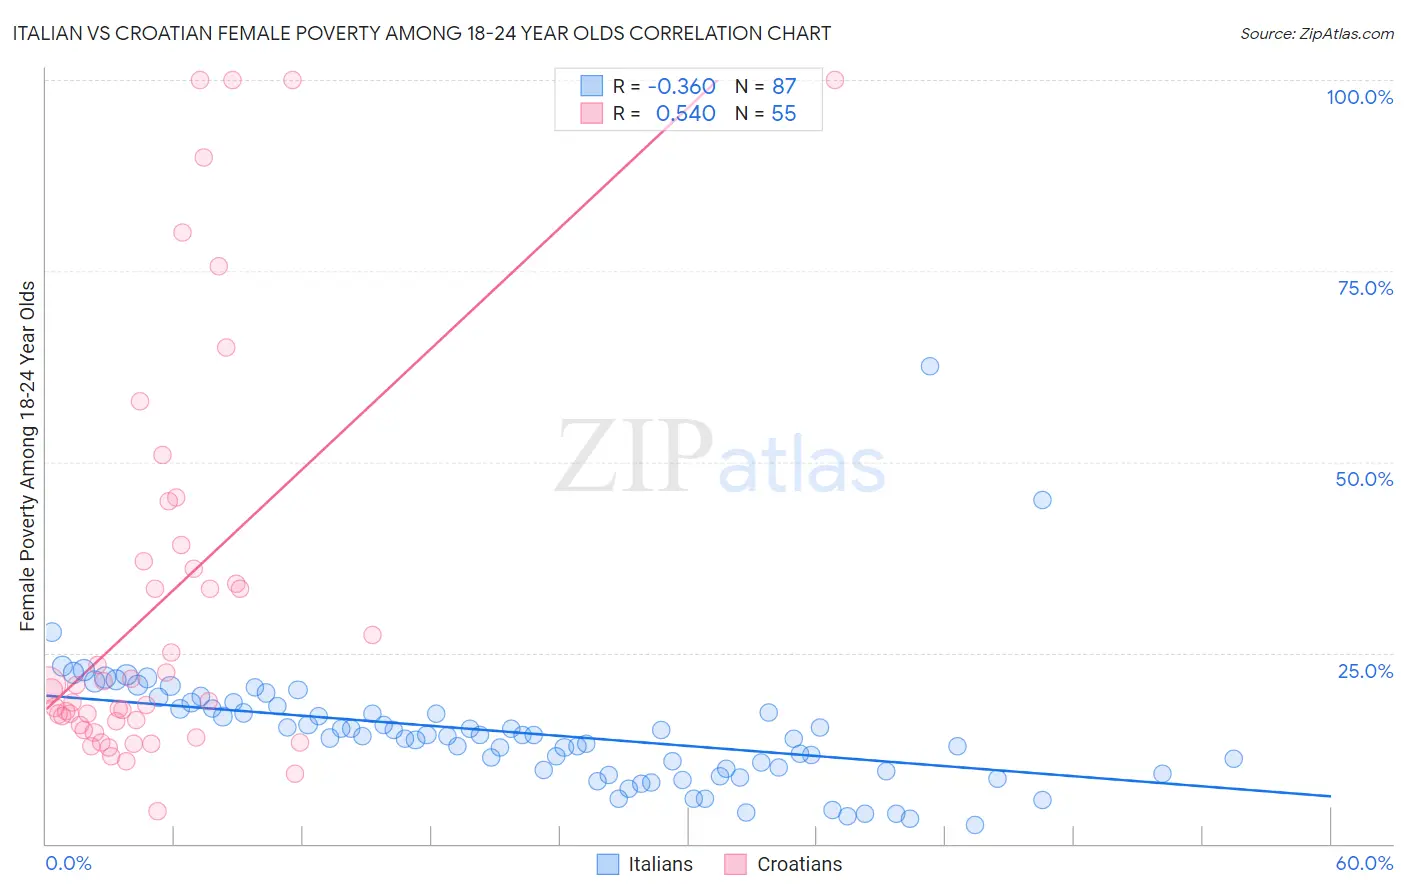 Italian vs Croatian Female Poverty Among 18-24 Year Olds